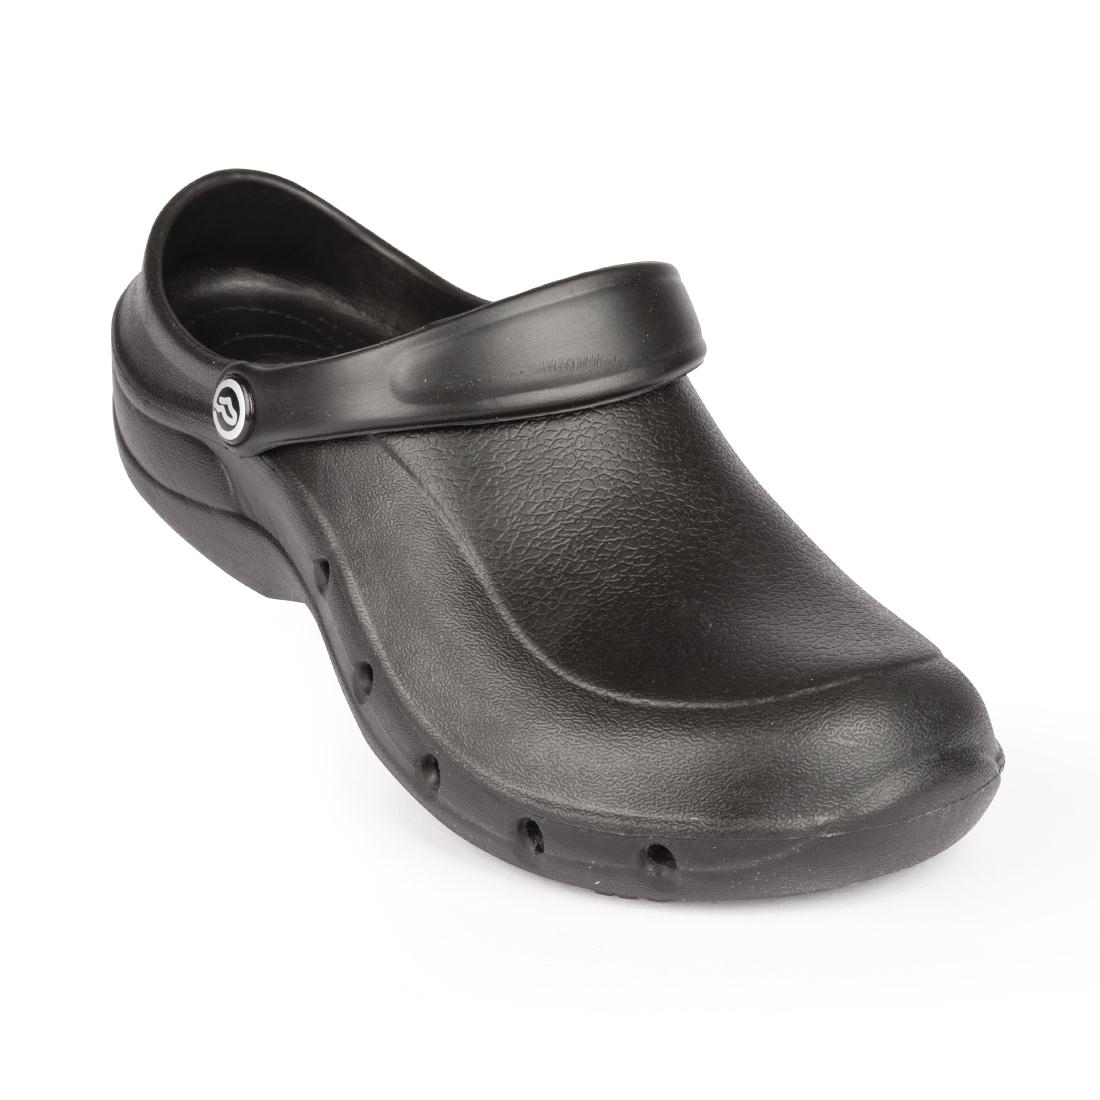 slipbuster unisex safety shoe black